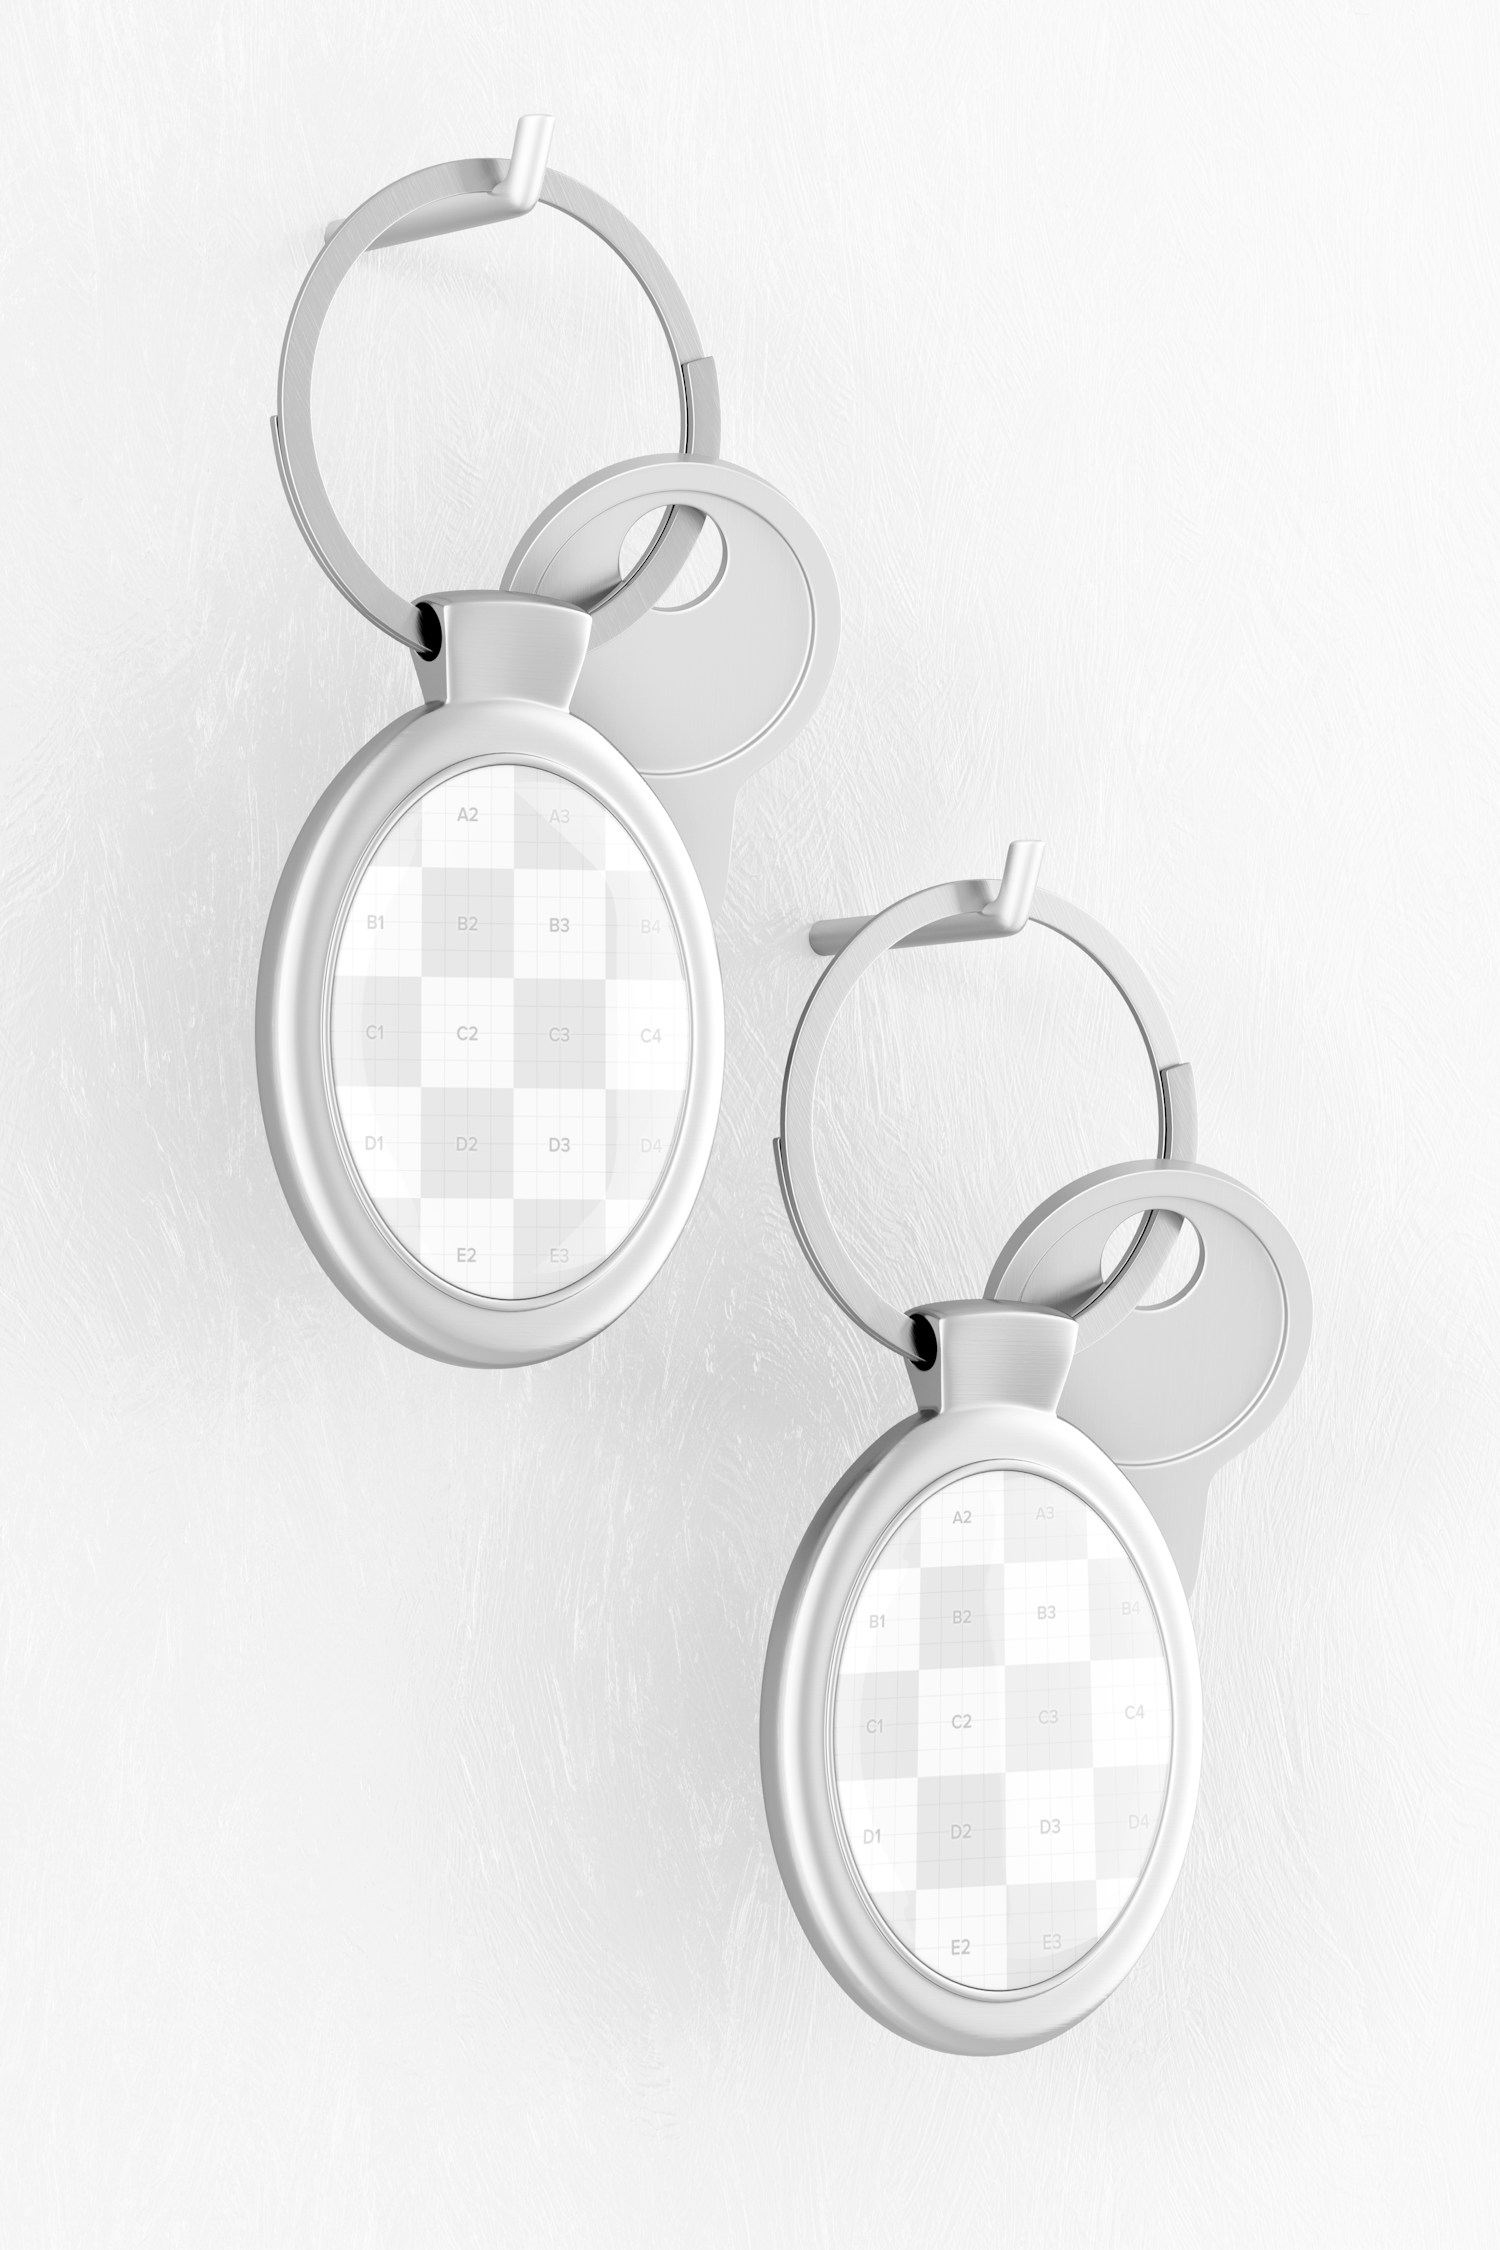 Metallic Oval Keychain Mockup, Hanging on Wall